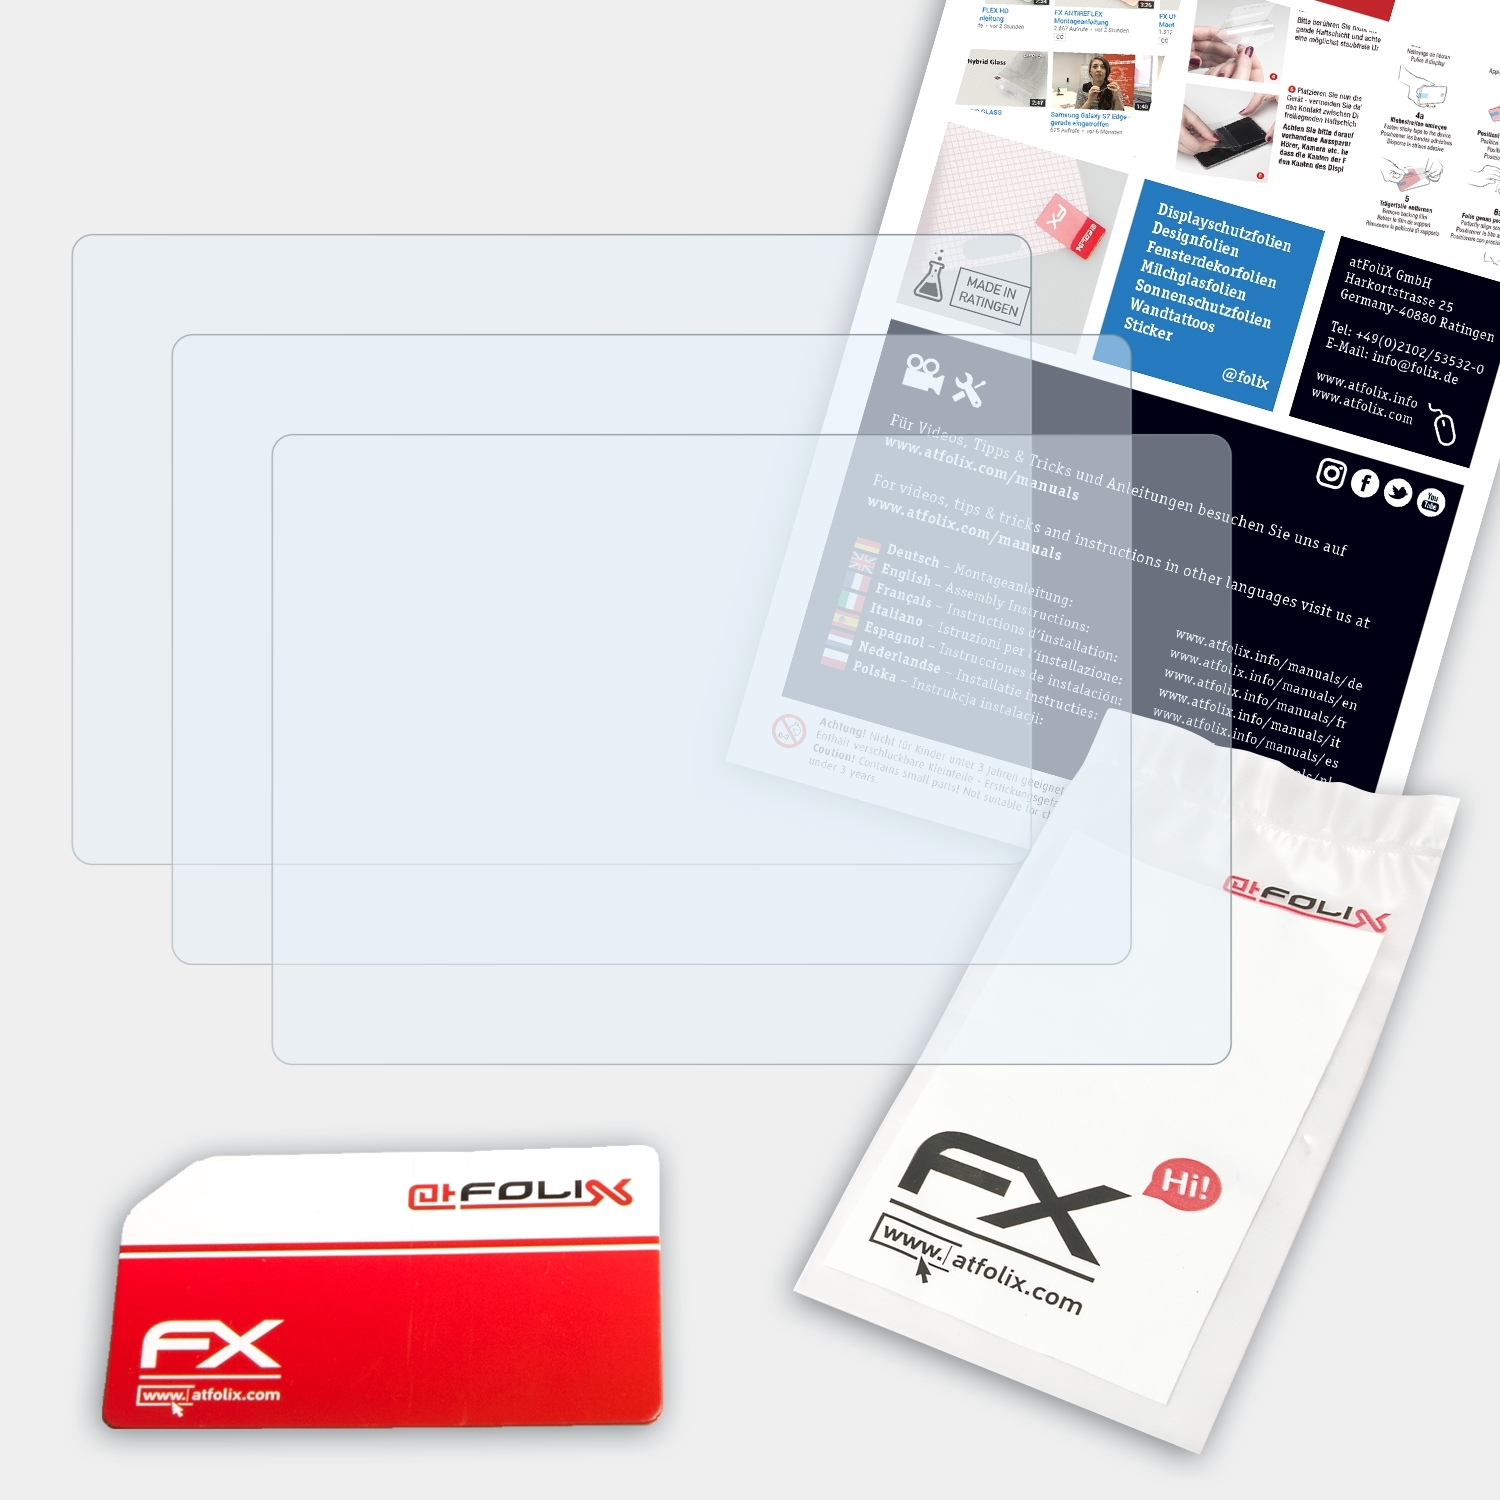 Displayschutz(für Lumix DMC-G5) 3x FX-Clear Panasonic ATFOLIX